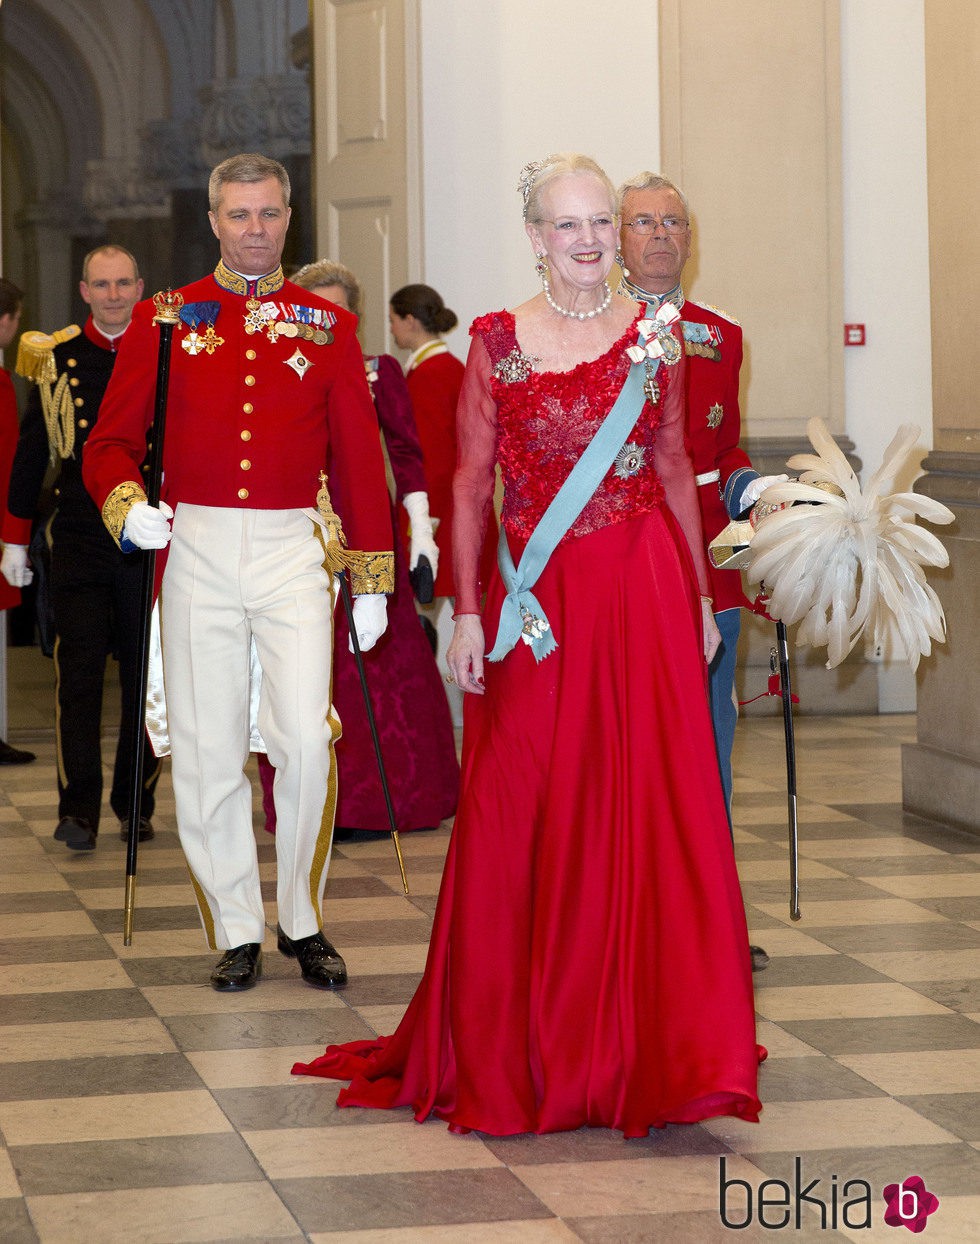 La reina Margarita de Dinamarca con un vestido rojo pasión